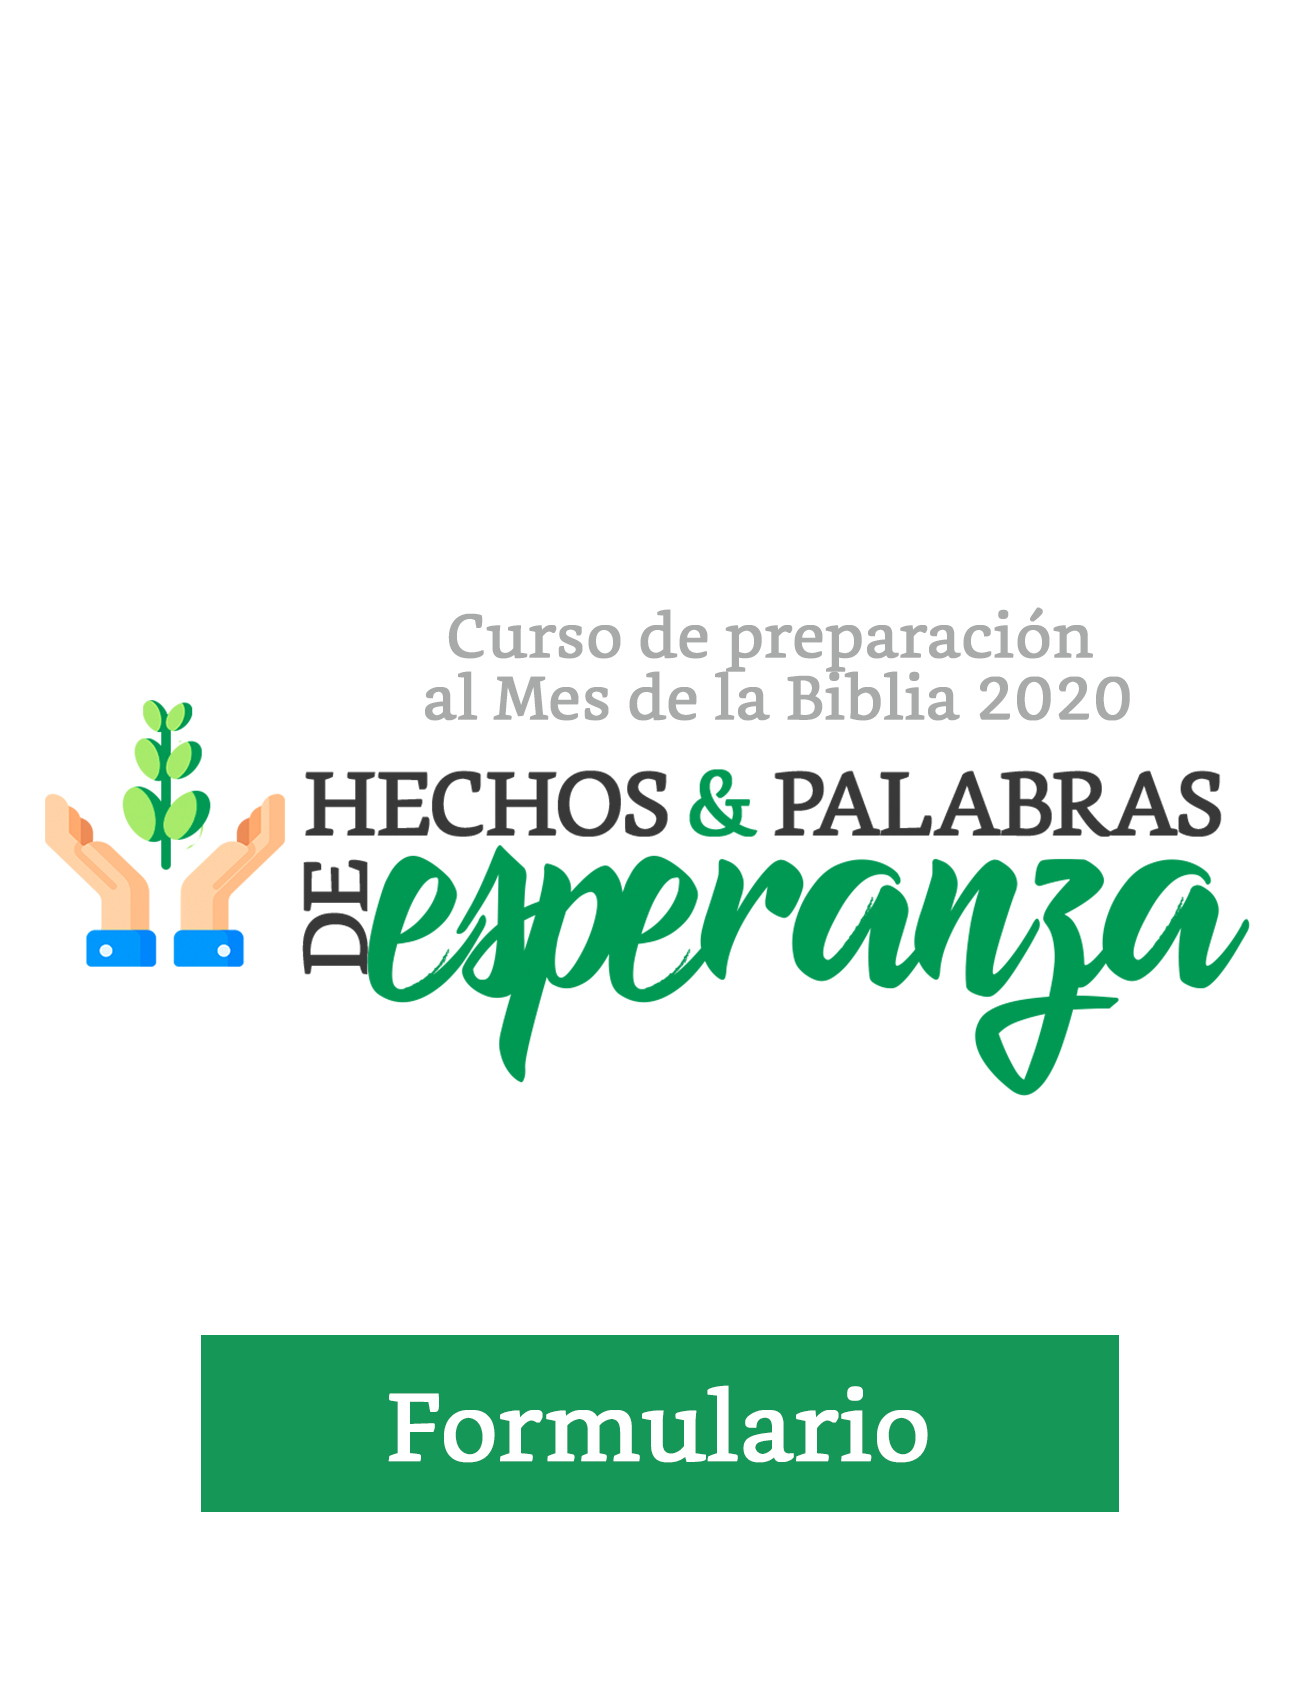 HECHOS & PALABRAS DE ESPERANZA